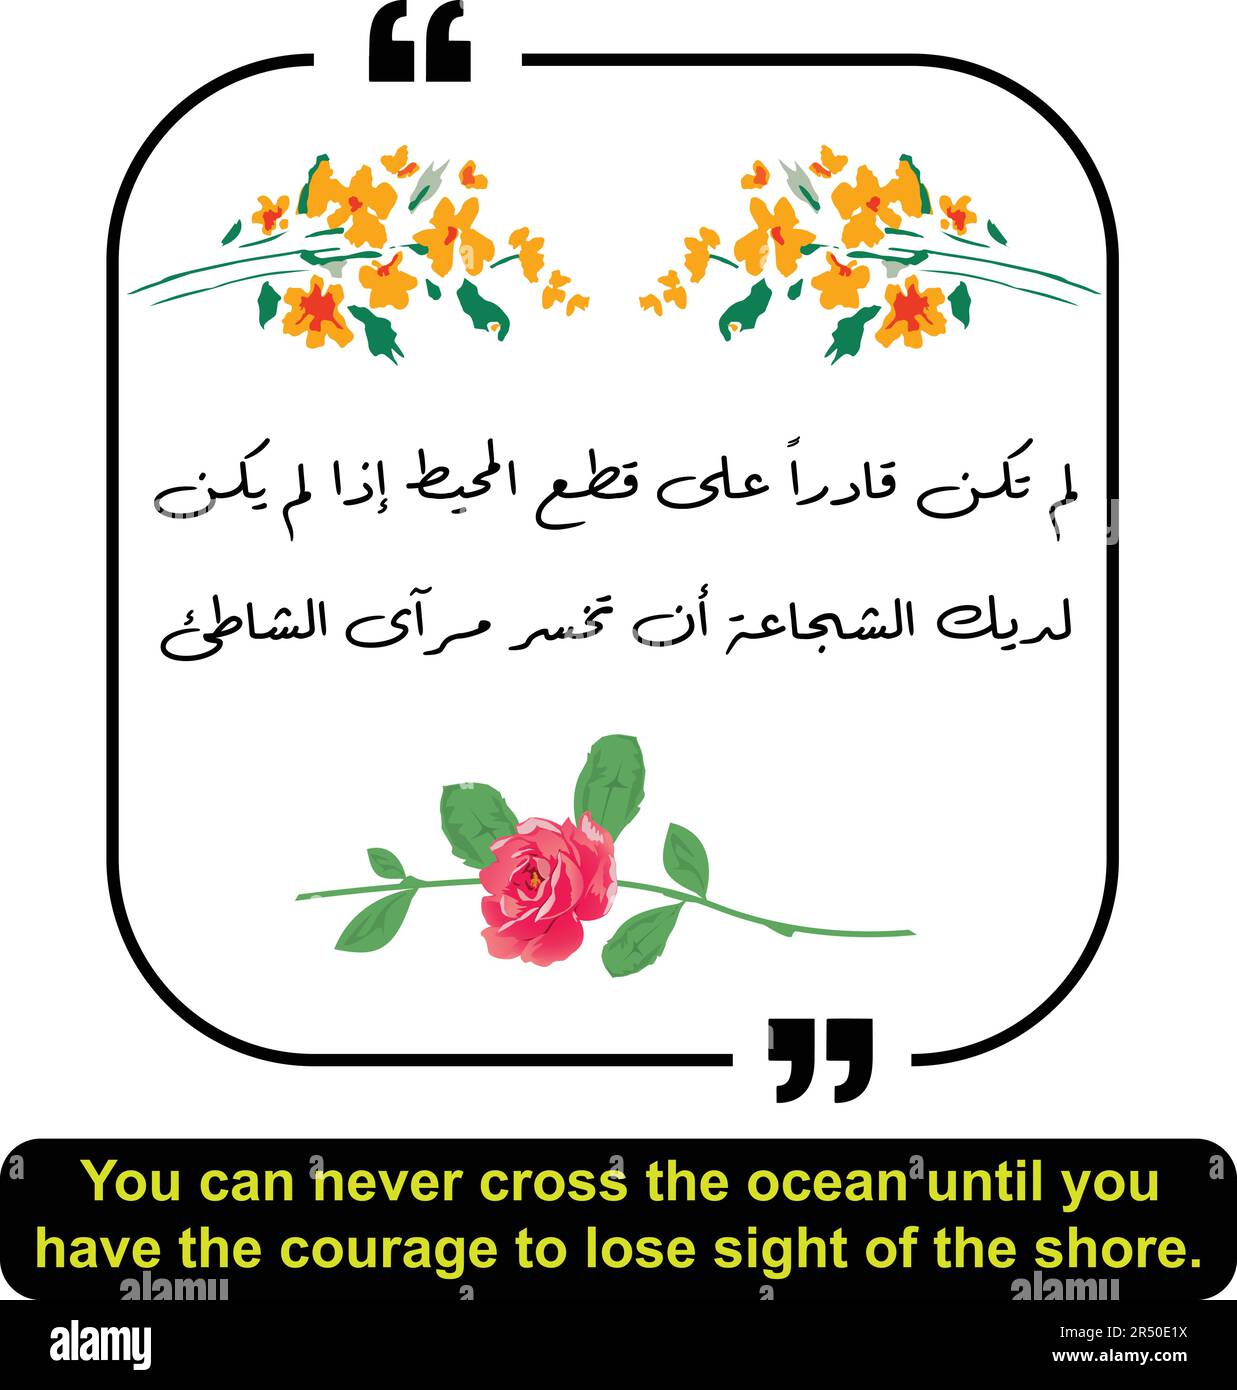 Arabisches Zitat bedeutet, dass man den Ozean nie überqueren kann, bis man den Mut hat, die Küste aus den Augen zu verlieren. Arabische Anführungszeichen mit englischer Übersetzung. Stock Vektor